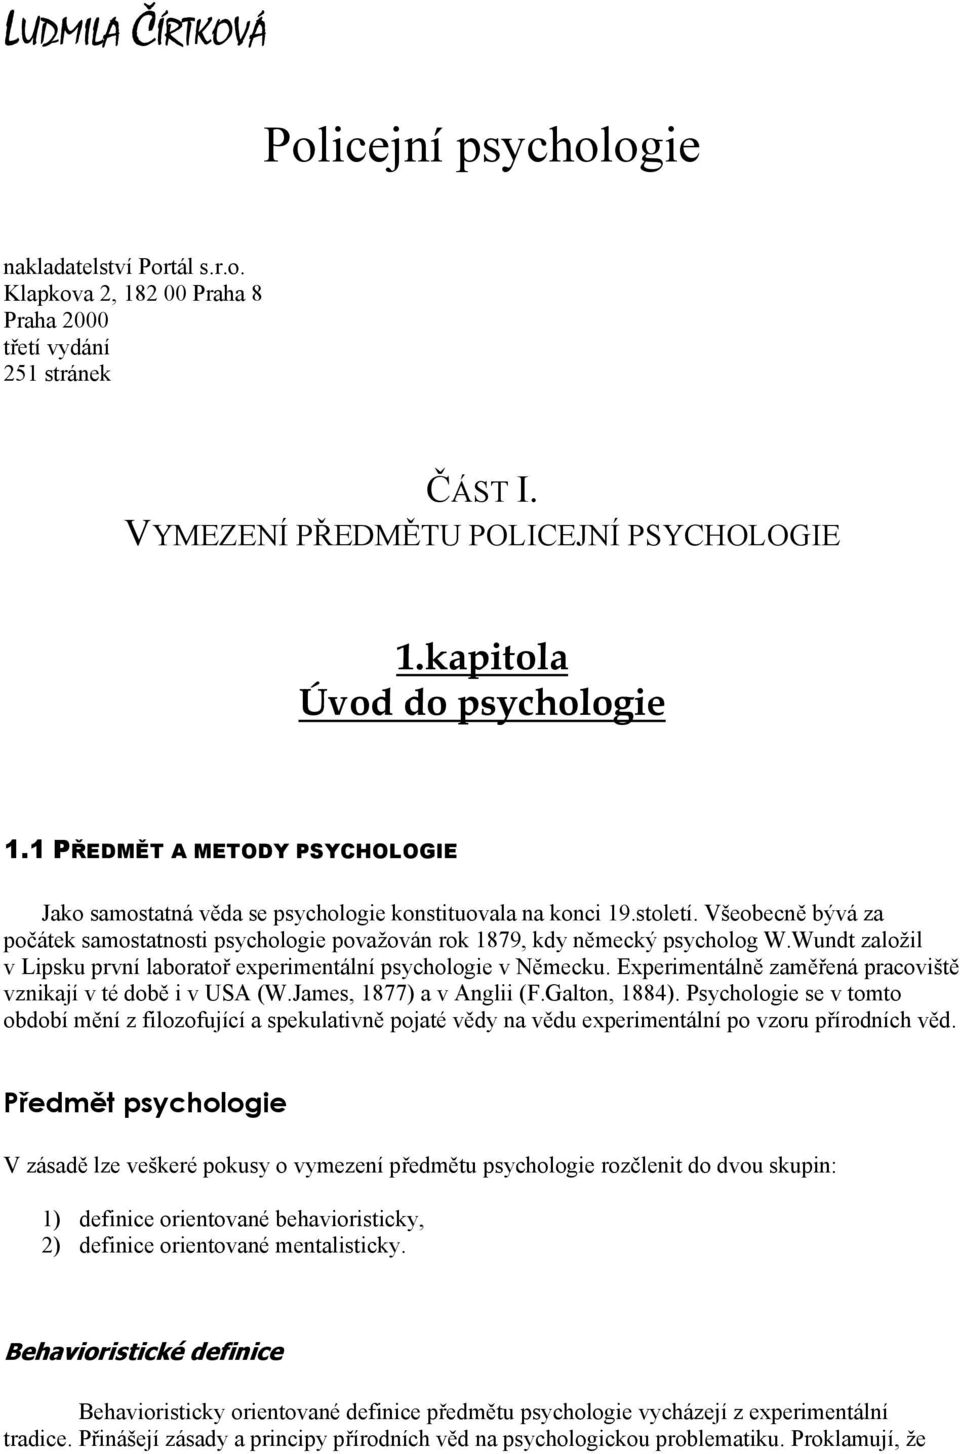 Všeobecně bývá za počátek samostatnosti psychologie považován rok 1879, kdy německý psycholog W.Wundt založil v Lipsku první laboratoř experimentální psychologie v Německu.